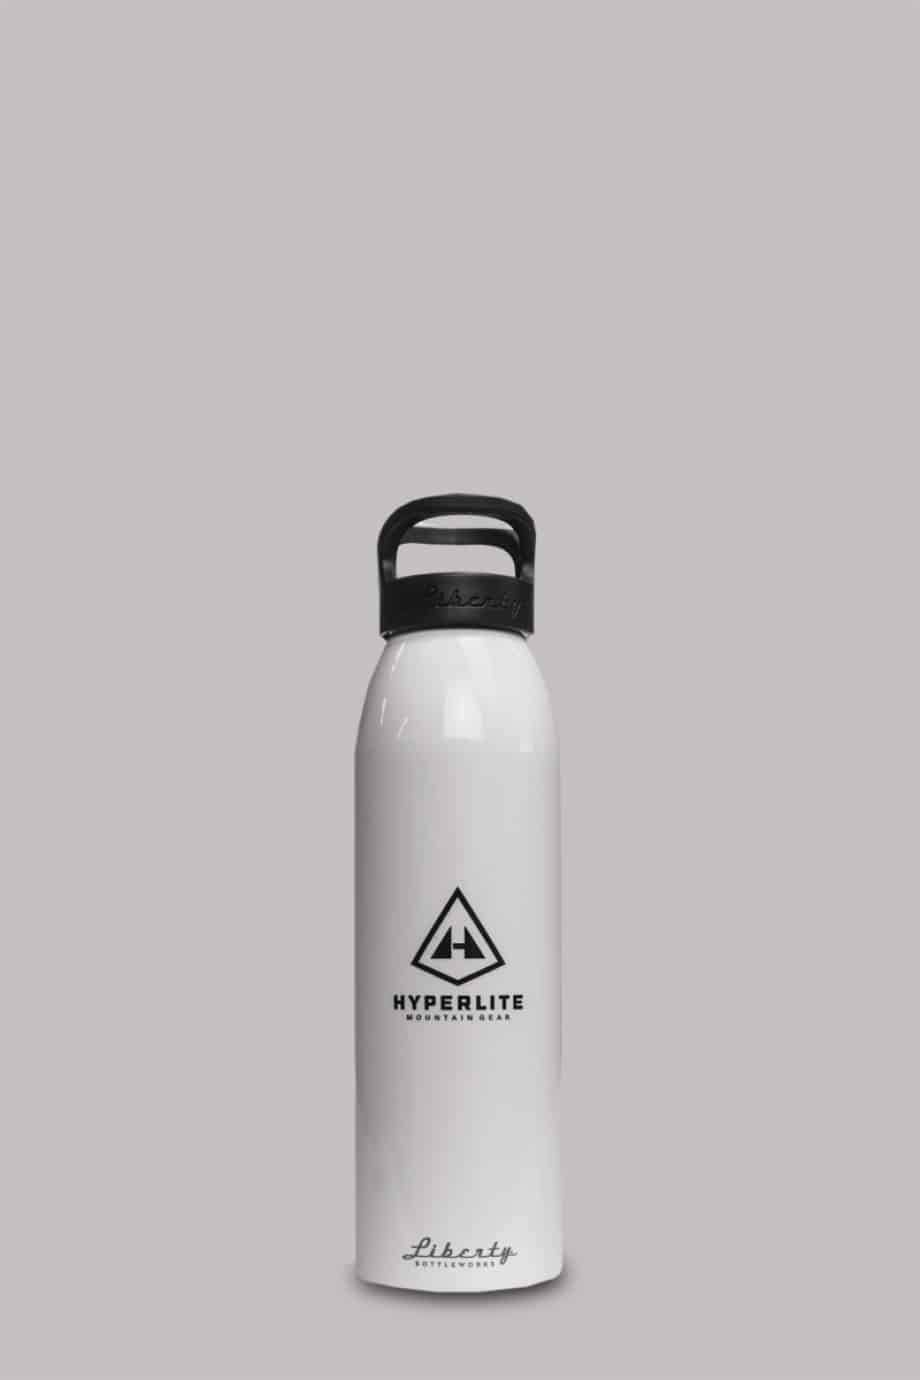 Hyperlite Mountain Gear The Bottle Pocket